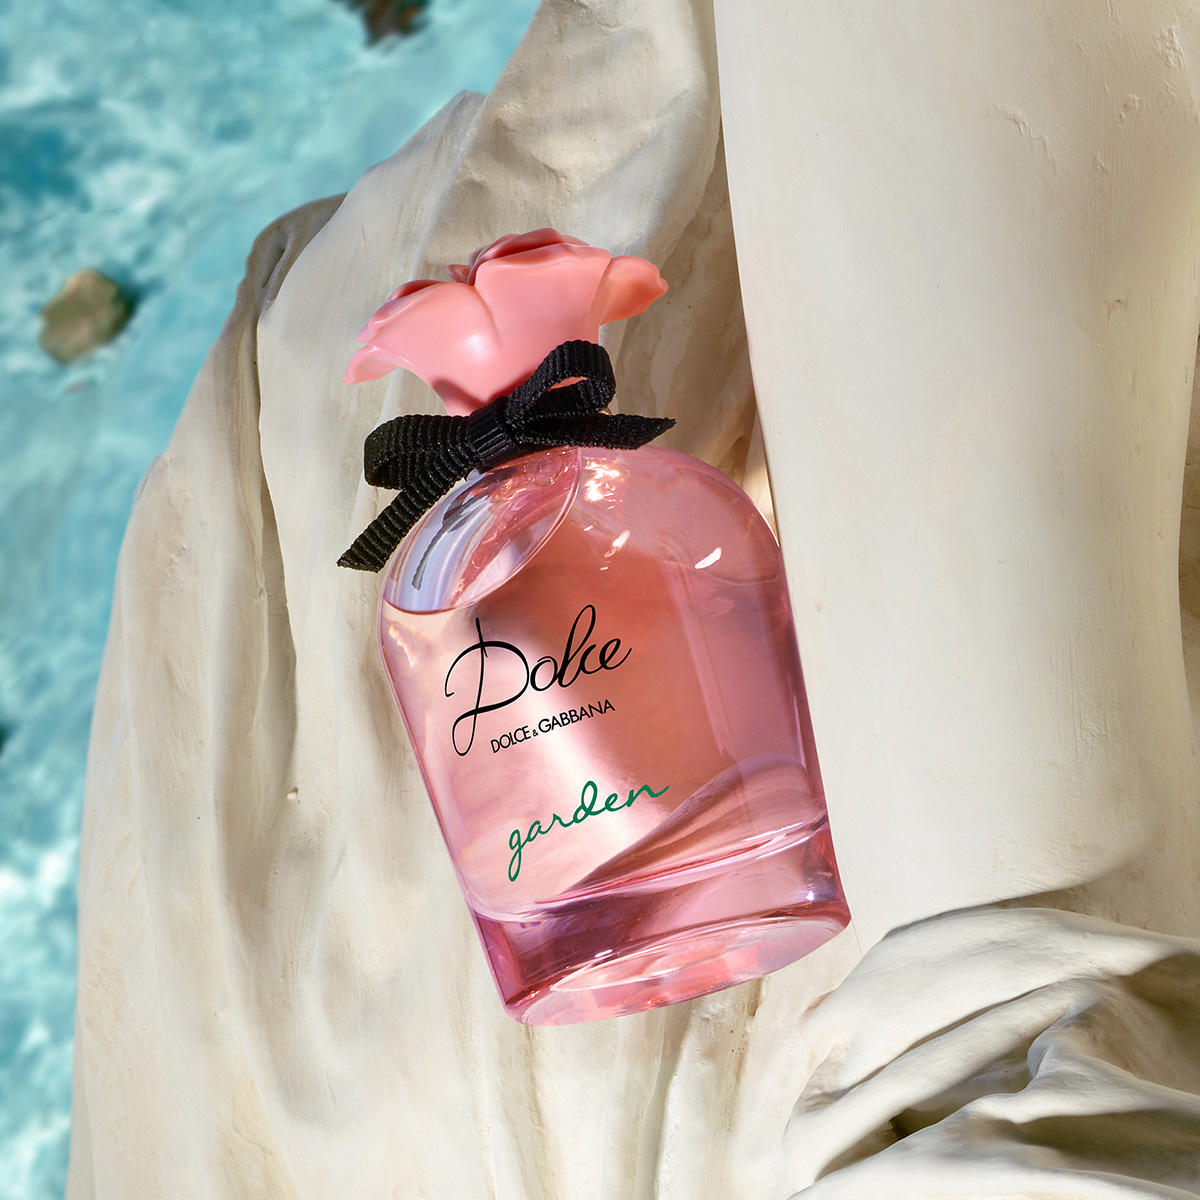 Dolce&Gabbana Dolce Garden Eau de Parfum 75 ml - 3